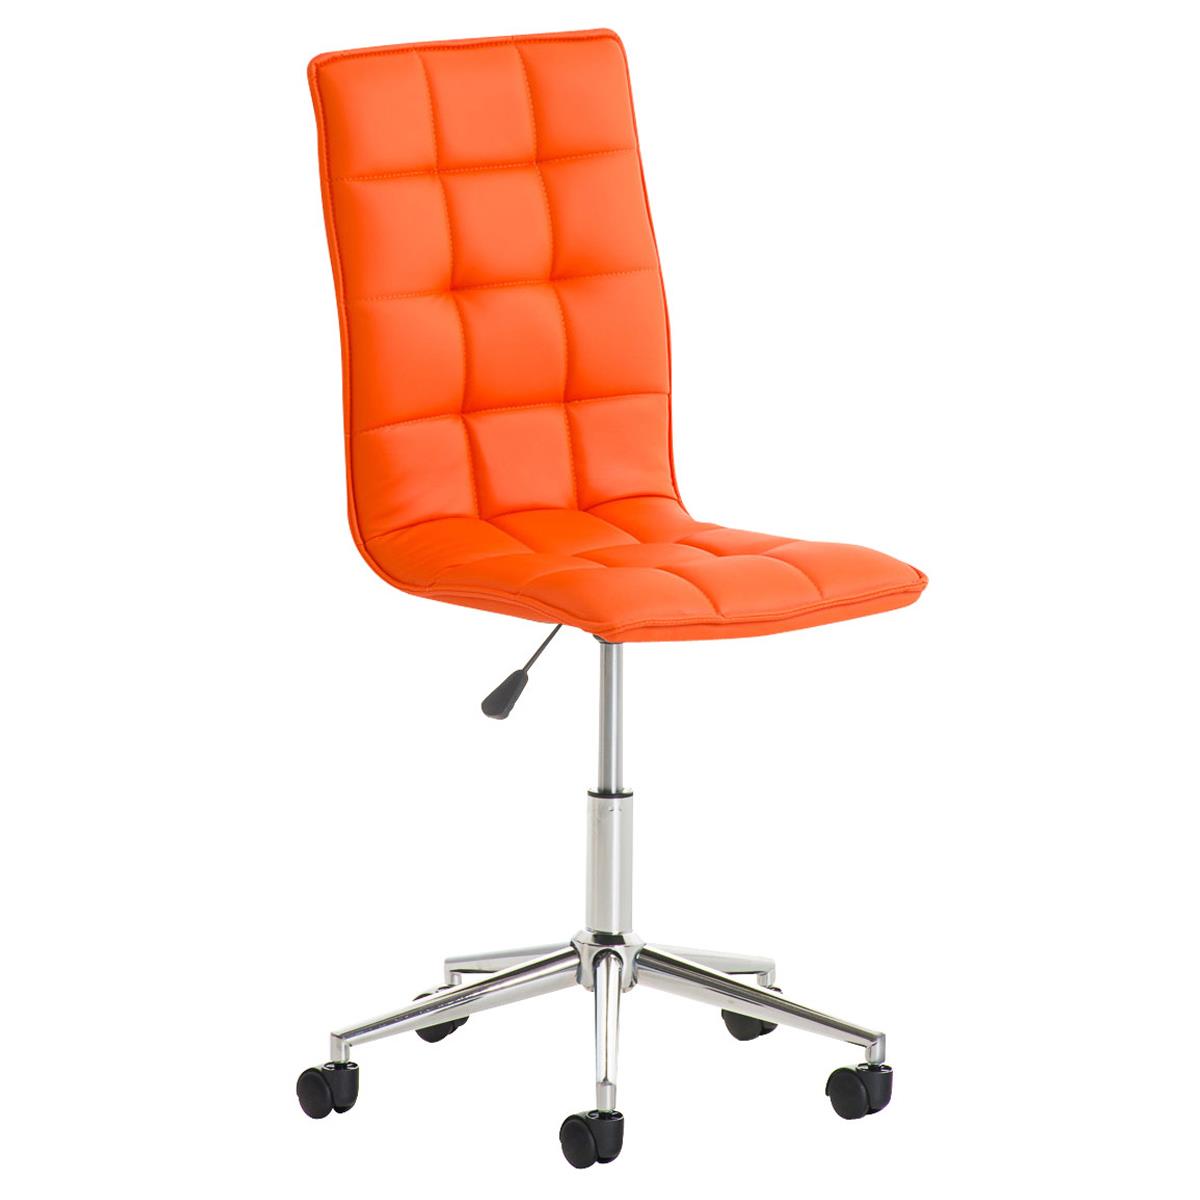 Chaise de bureau BULGARI, Design Sublime, Piétement Métallique, revêtement en Cuir, Orange